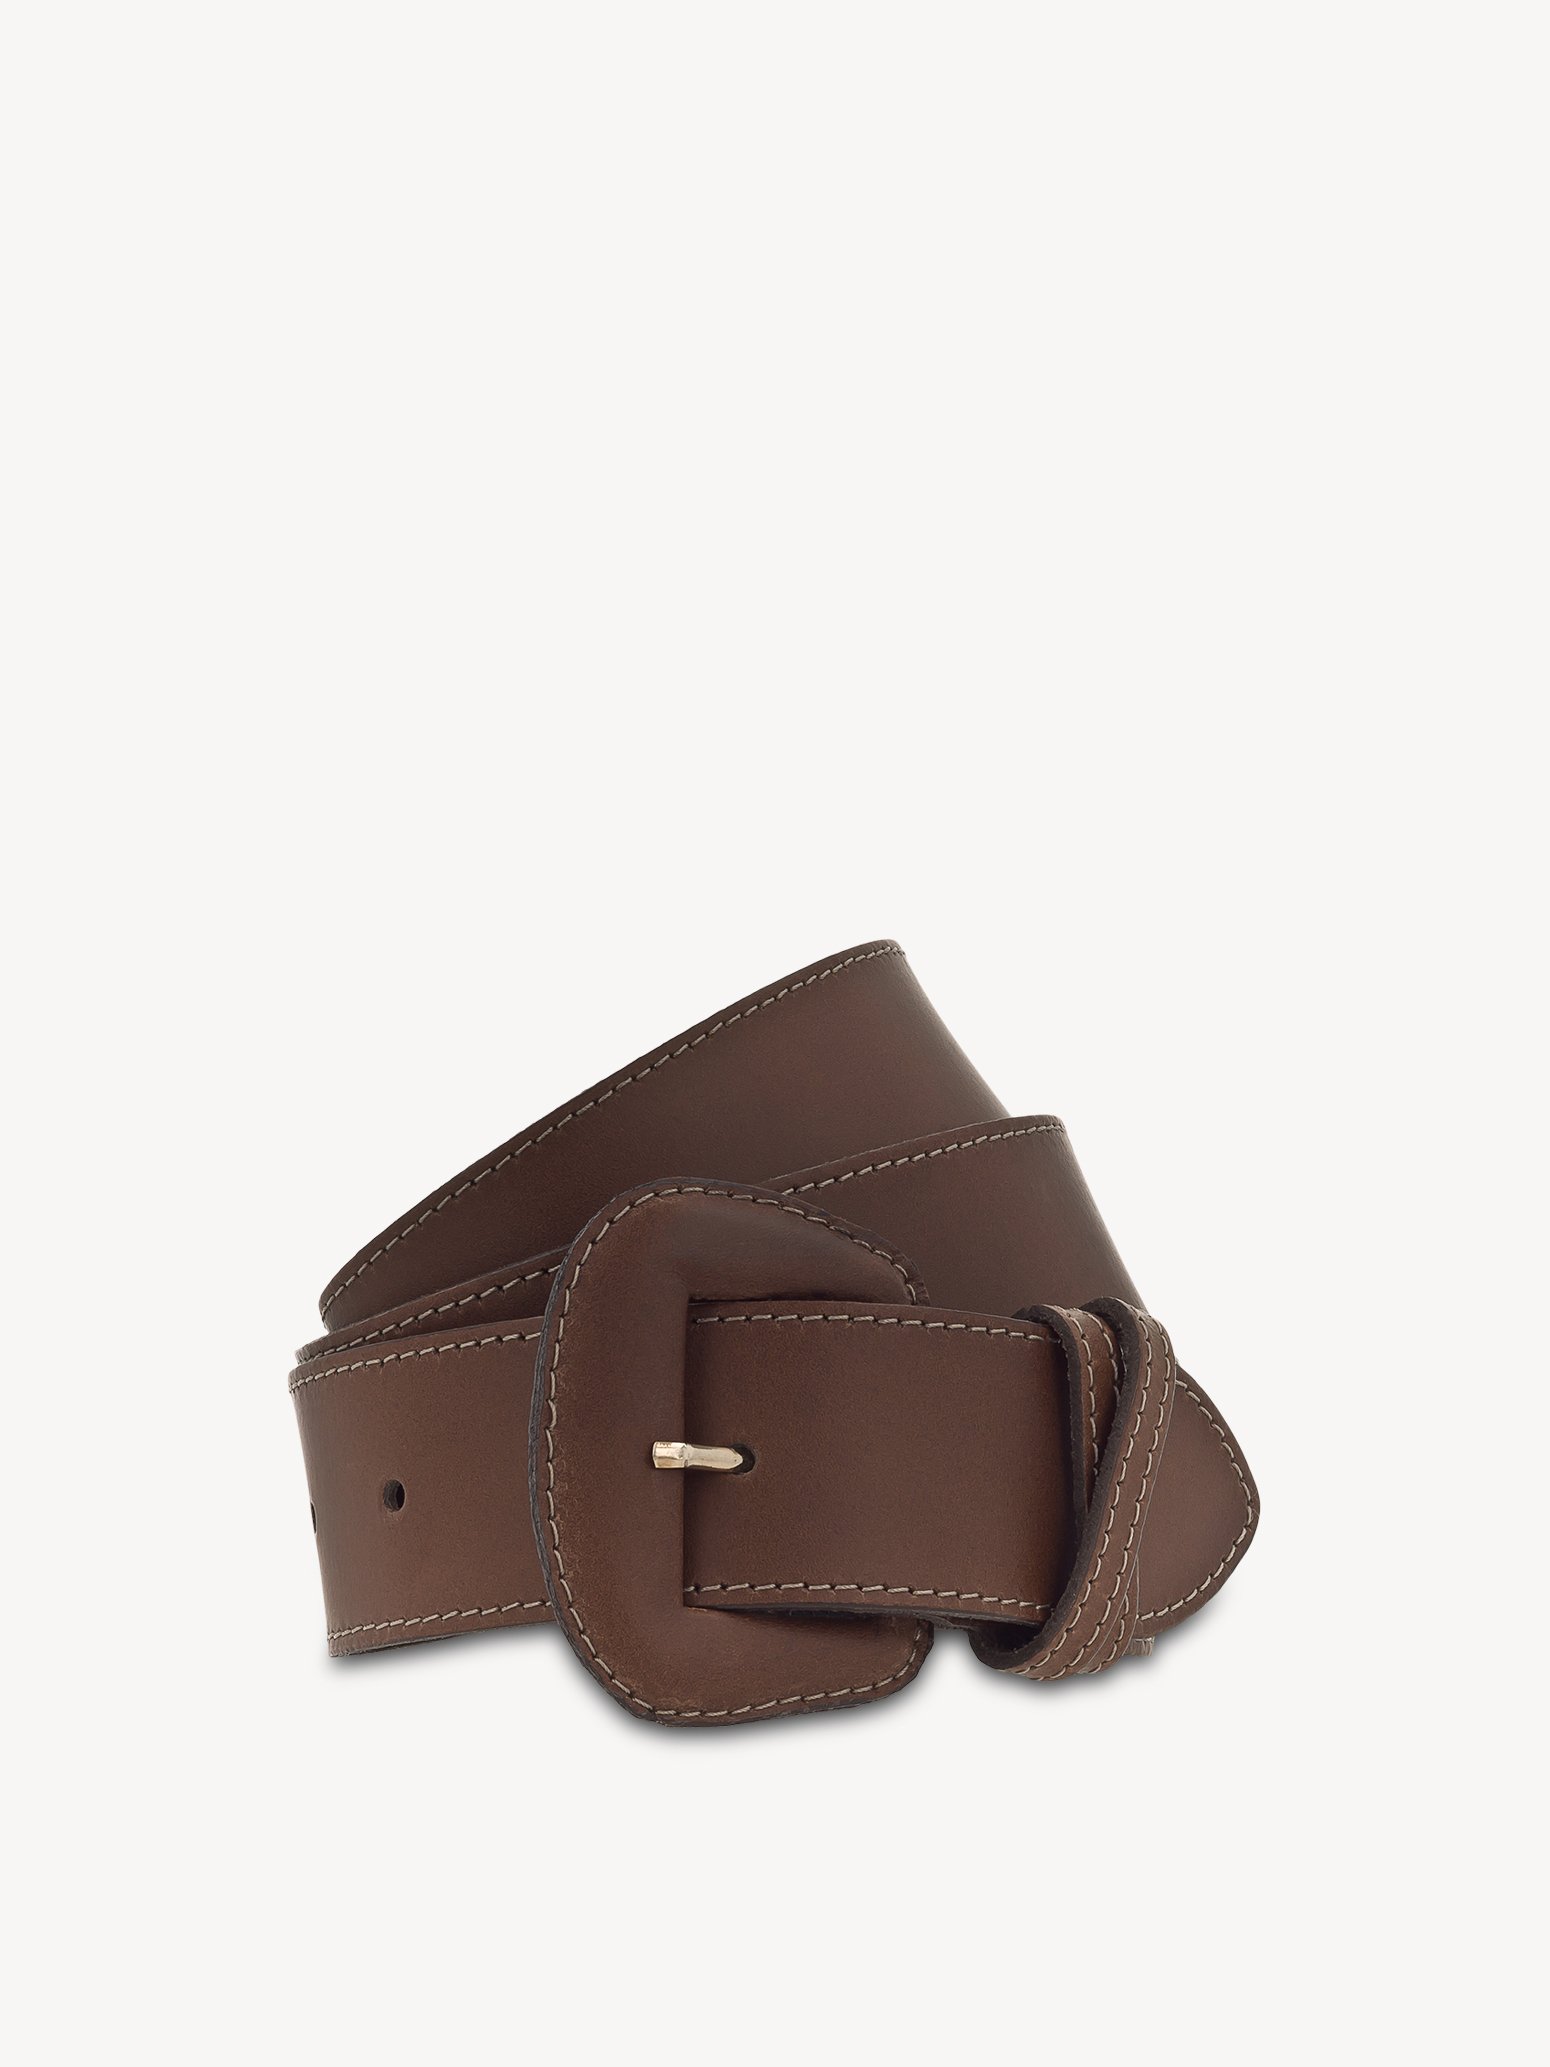 Leather Waist belt - brown